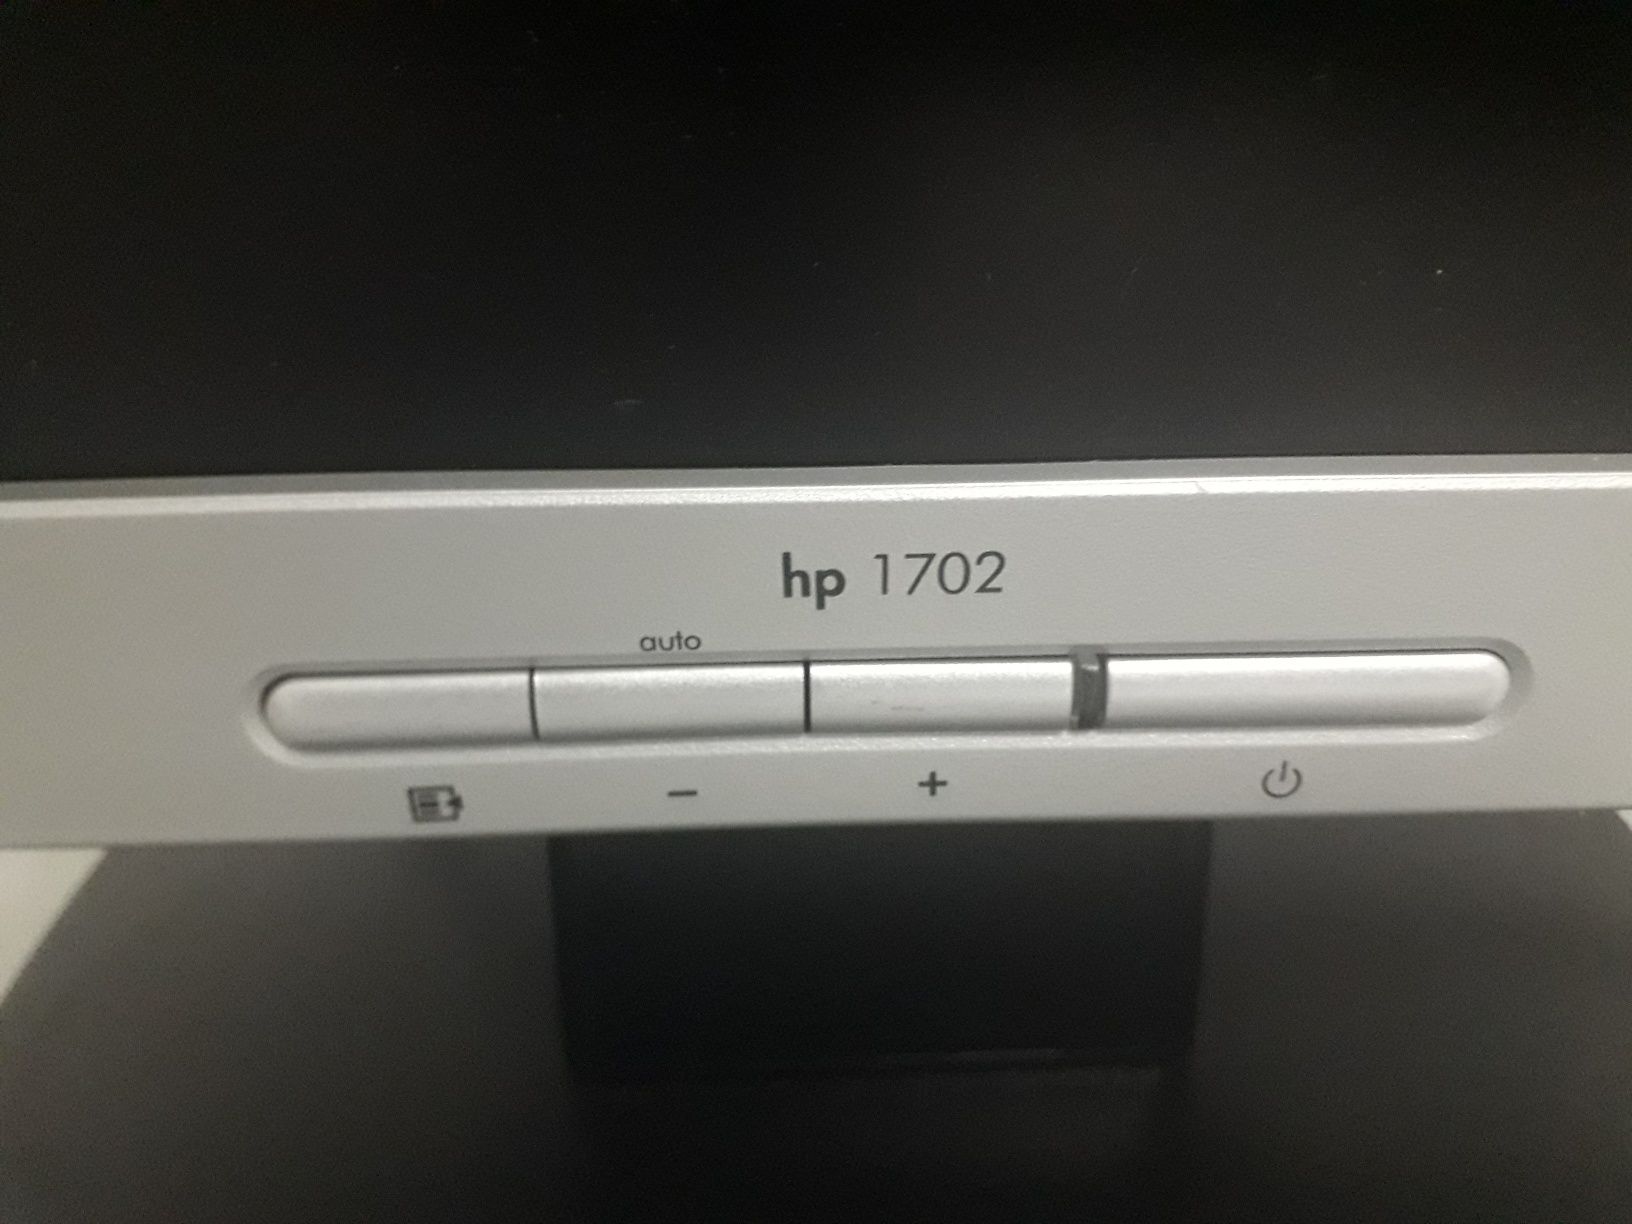 Monitor HP 1702 como novo